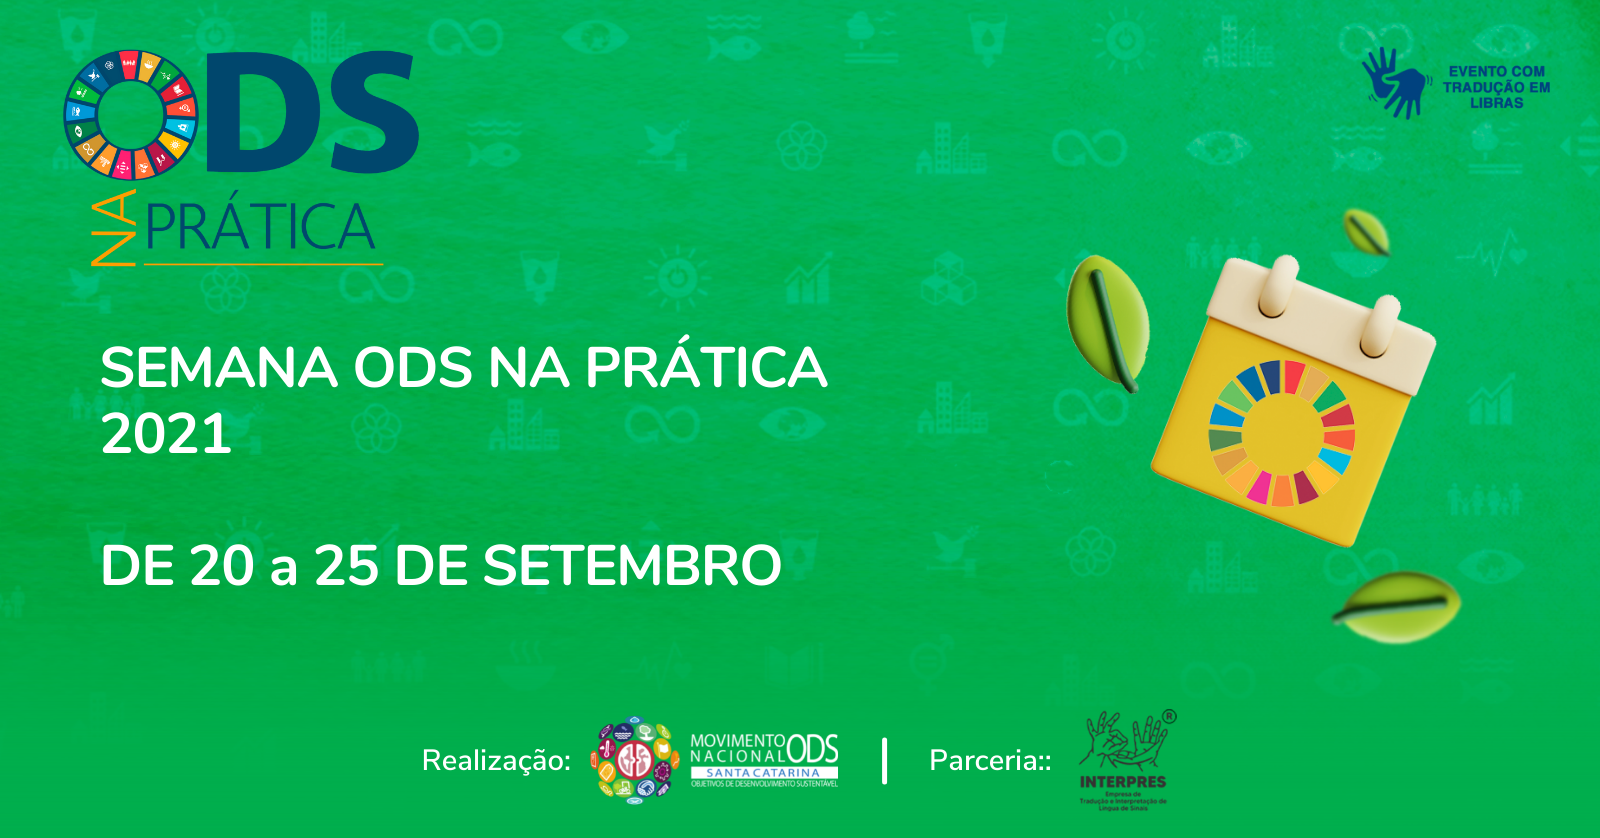  Semana ODS na Prática destaca ações sustentáveis em Santa Catarina